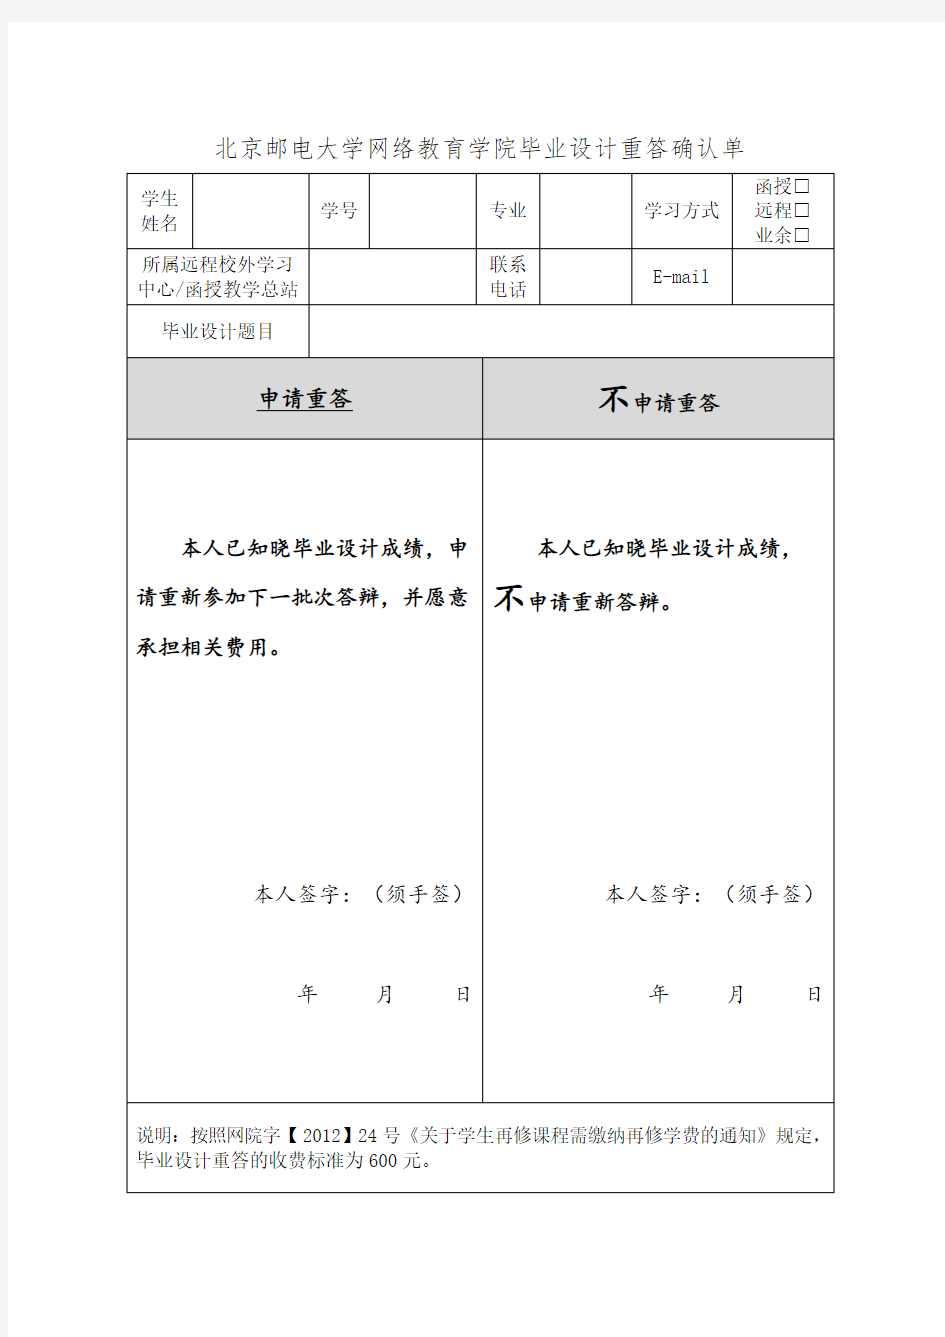 北京邮电大学网络教育学院毕业设计重答确认单